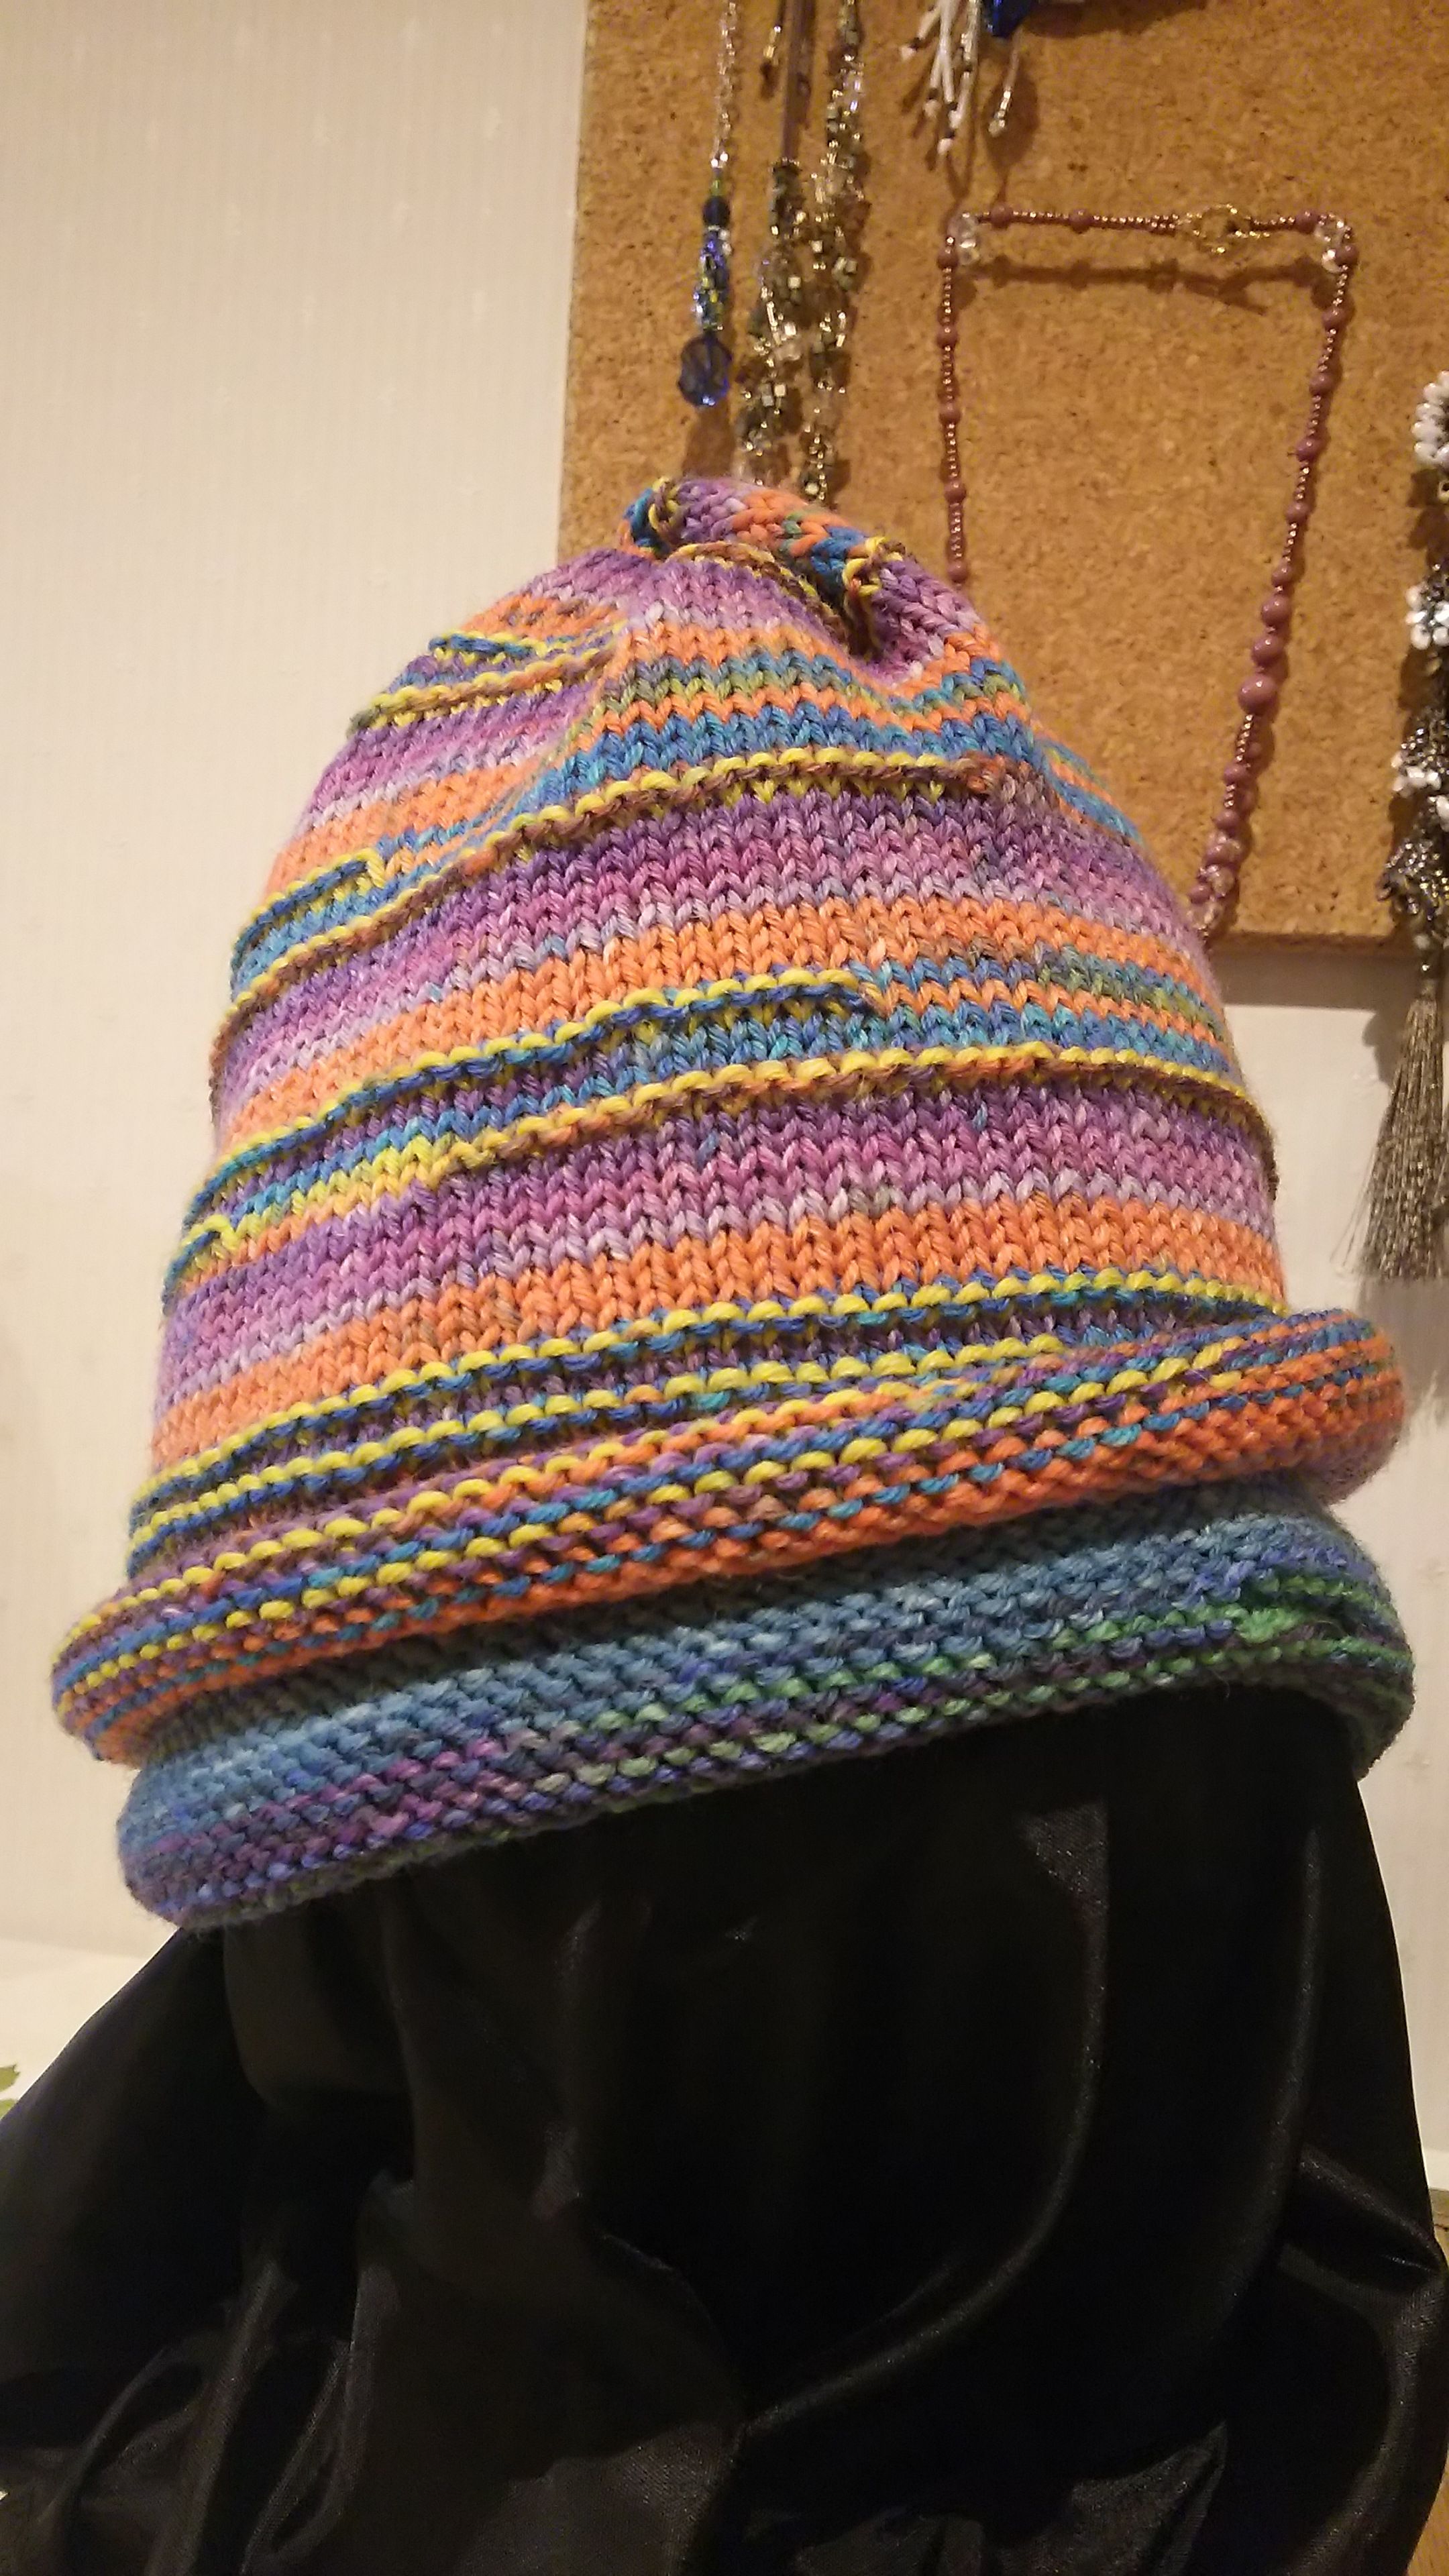 レリーフ編みのリバーシブル帽子 | 心のままに - 楽天ブログ